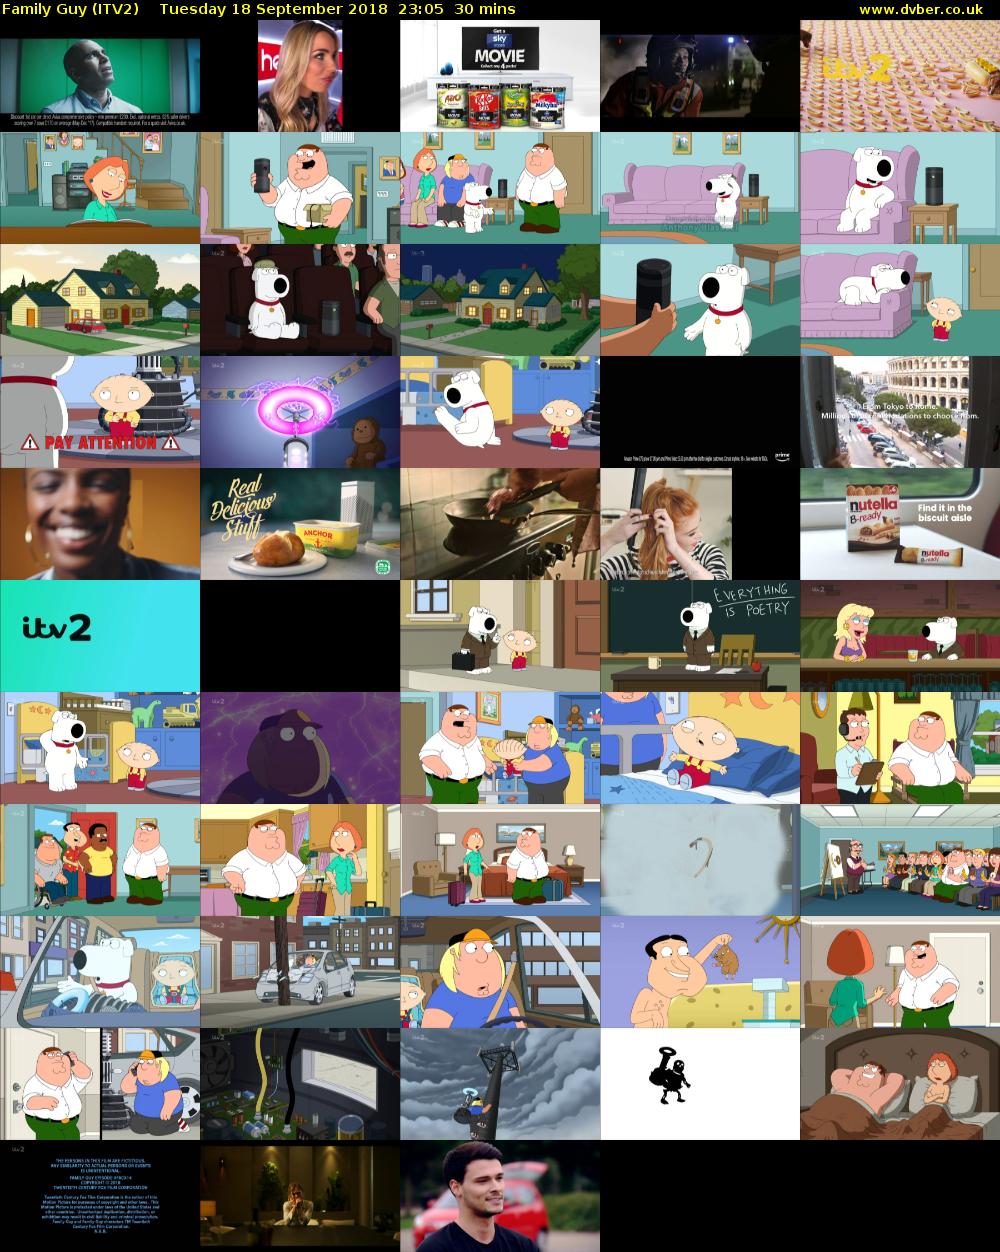 Family Guy (ITV2) Tuesday 18 September 2018 23:05 - 23:35